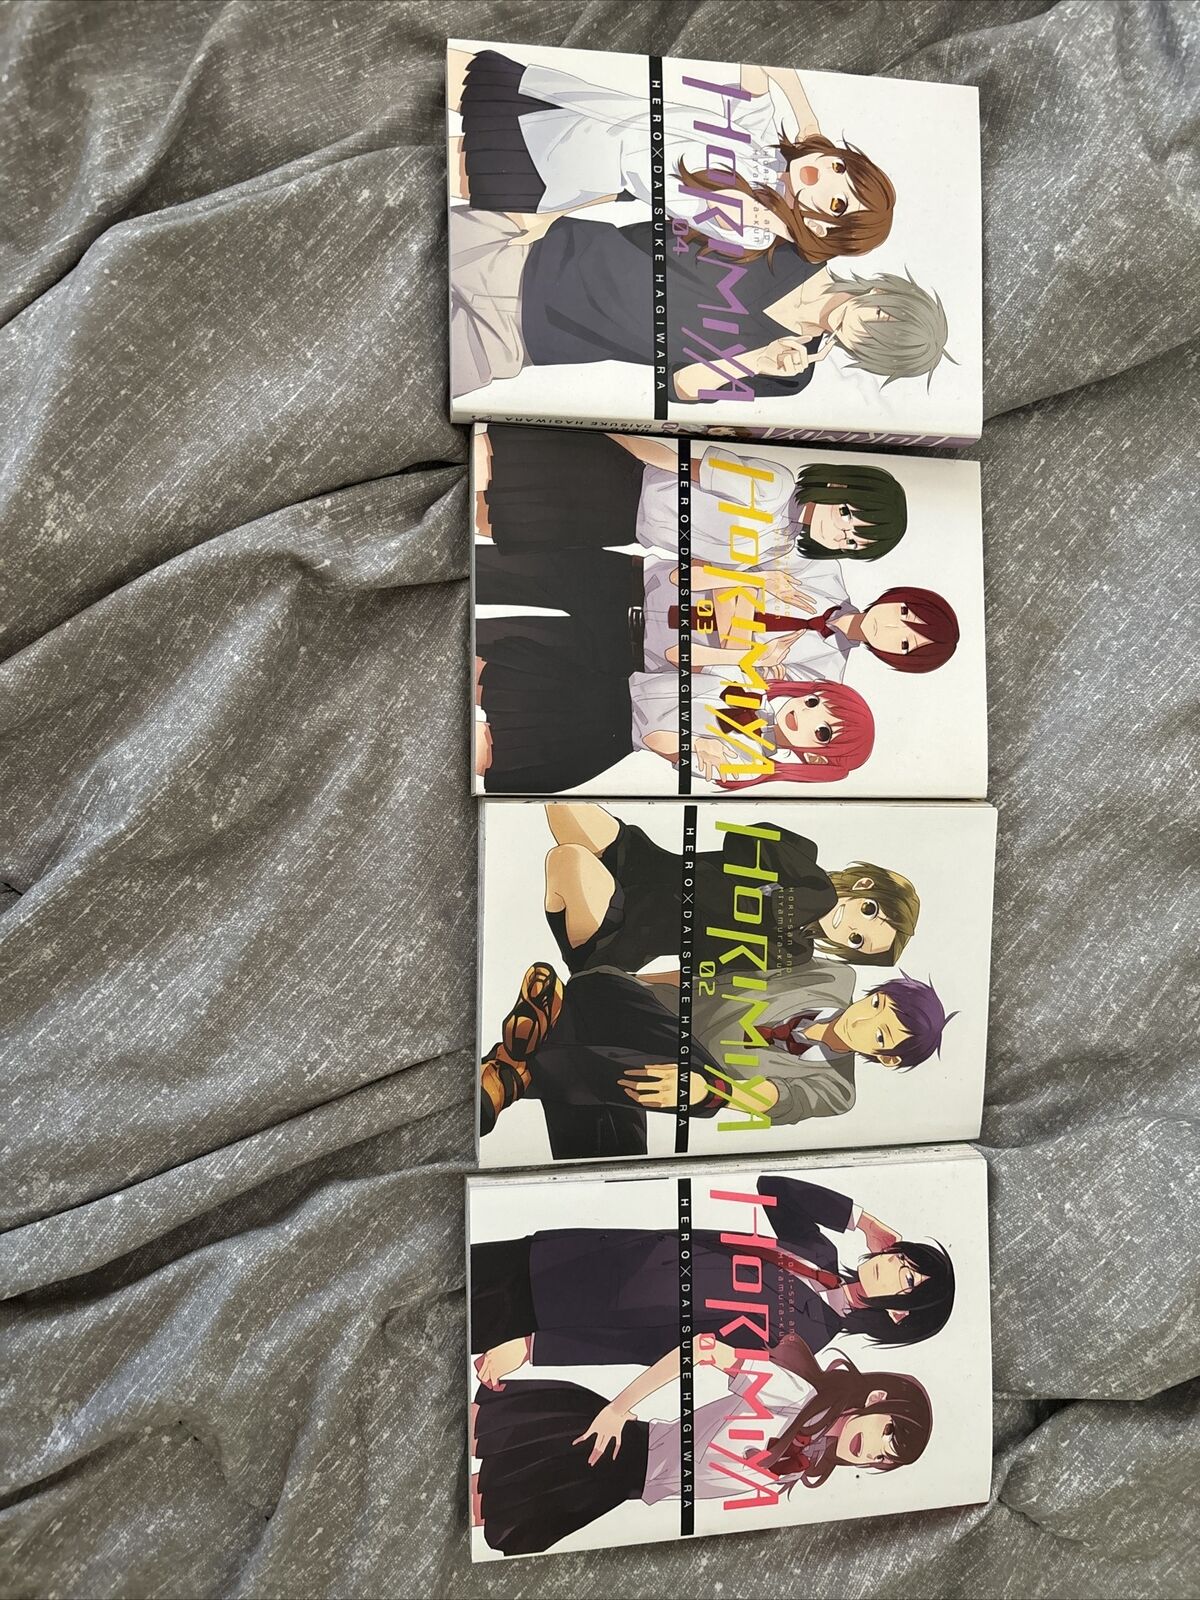 Horimiya Manga Volumes 1-4 Brand New Authentic Yen Press English